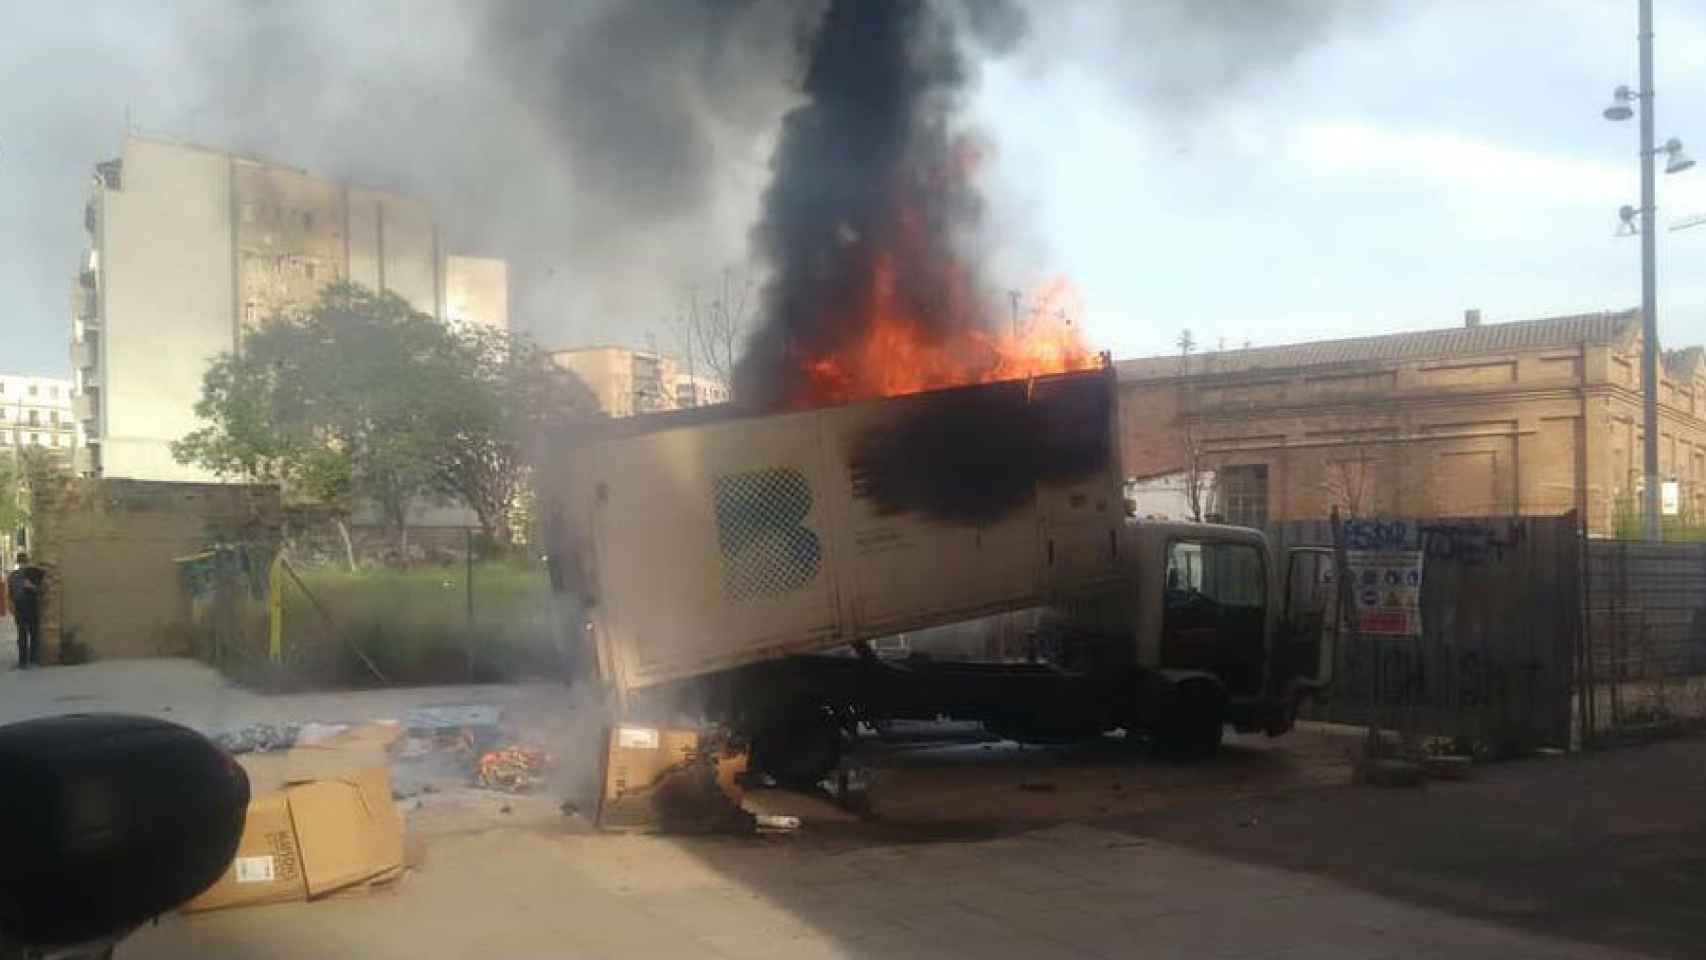 Espectacular incendio de un camión de la basura cerca de Can Batlló / FACEBOOK ENRIC JARA SIN